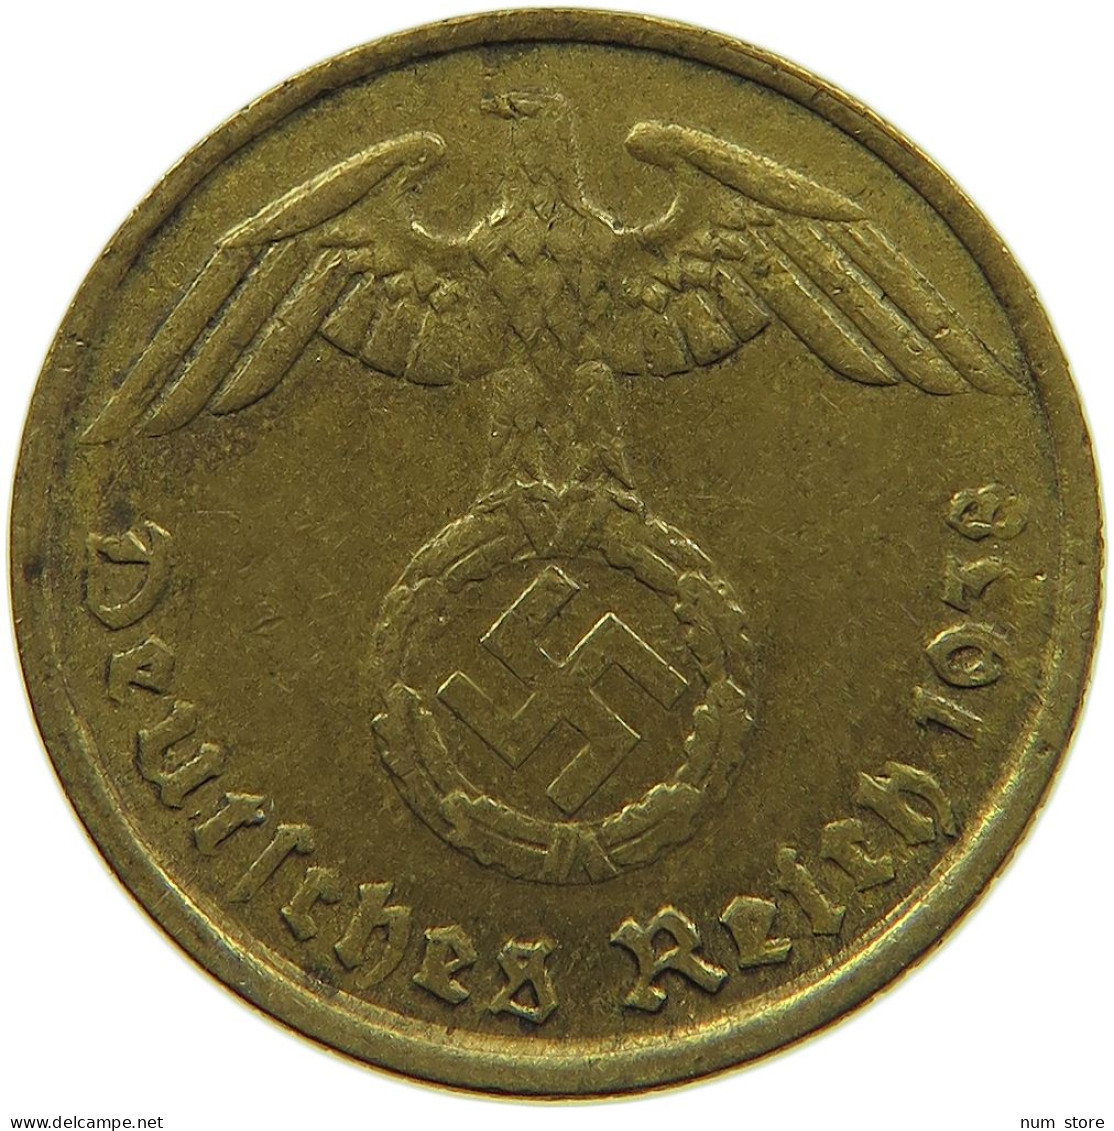 GERMANY 5 REICHSPFENNIG 1938 G OFF-CENTER #s091 0691 - 5 Reichspfennig